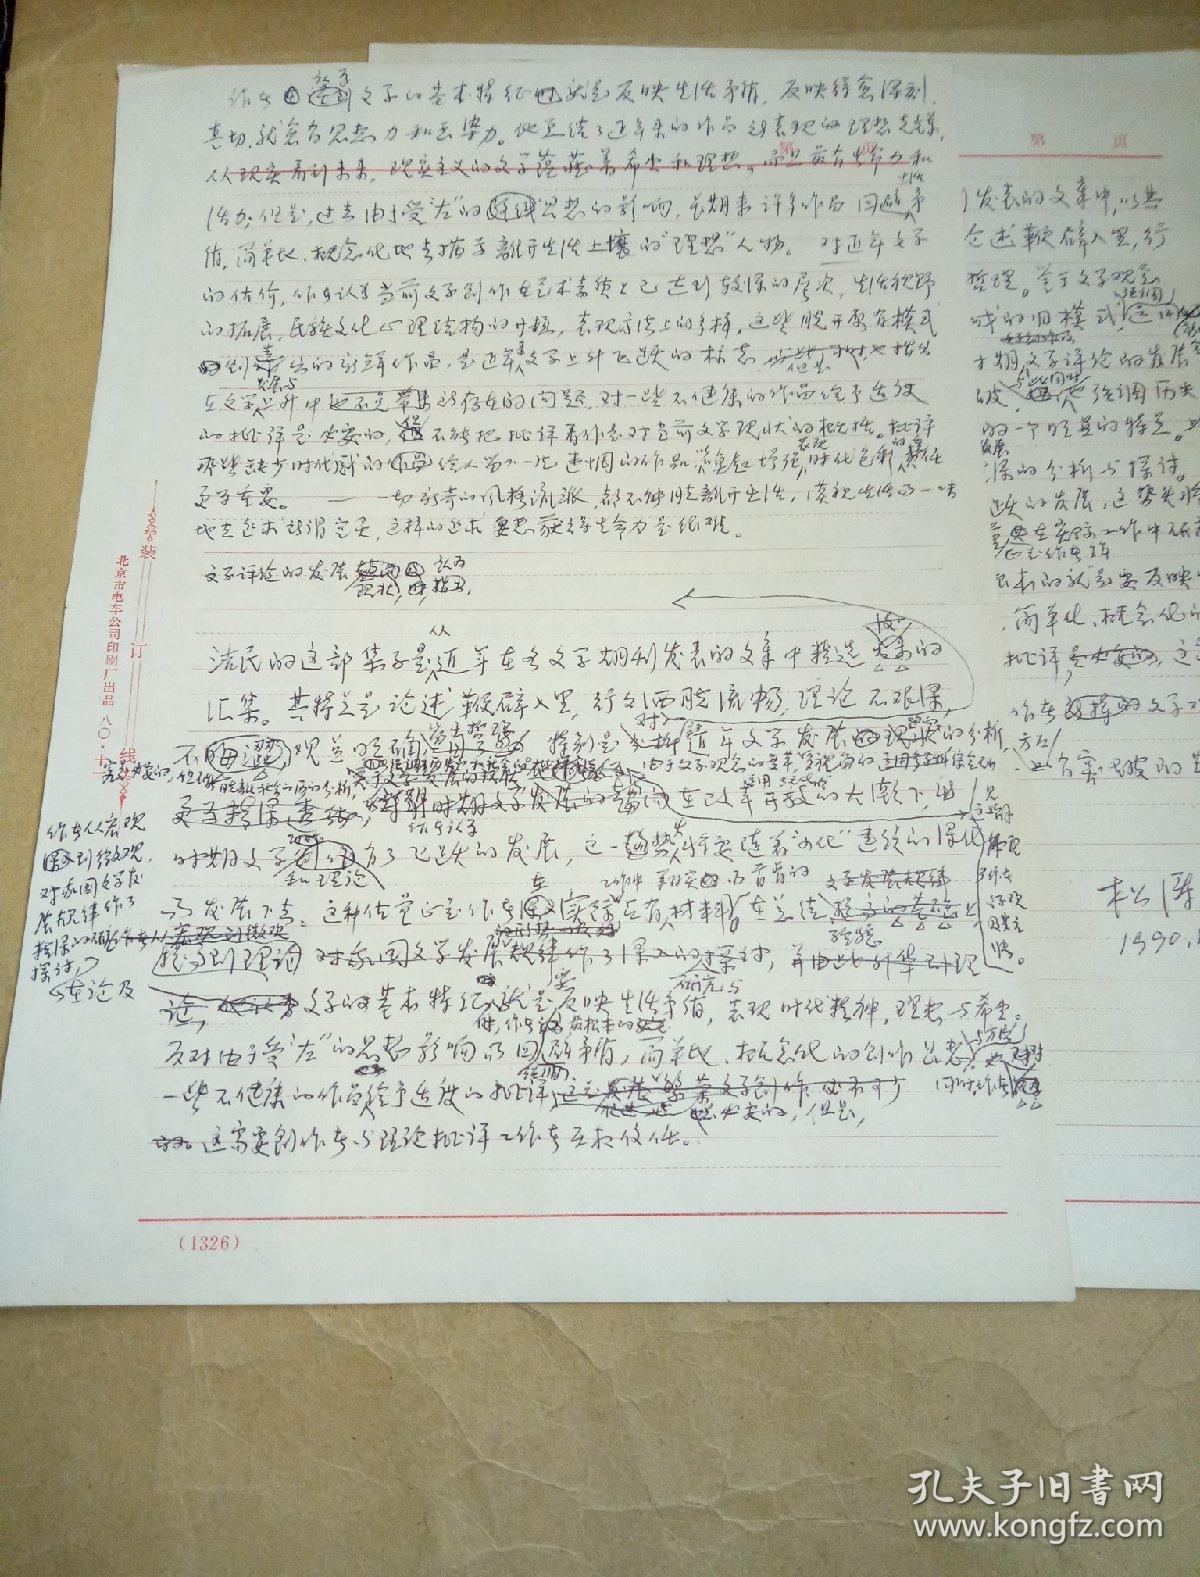 人民文学出版社松涛审稿意见两页